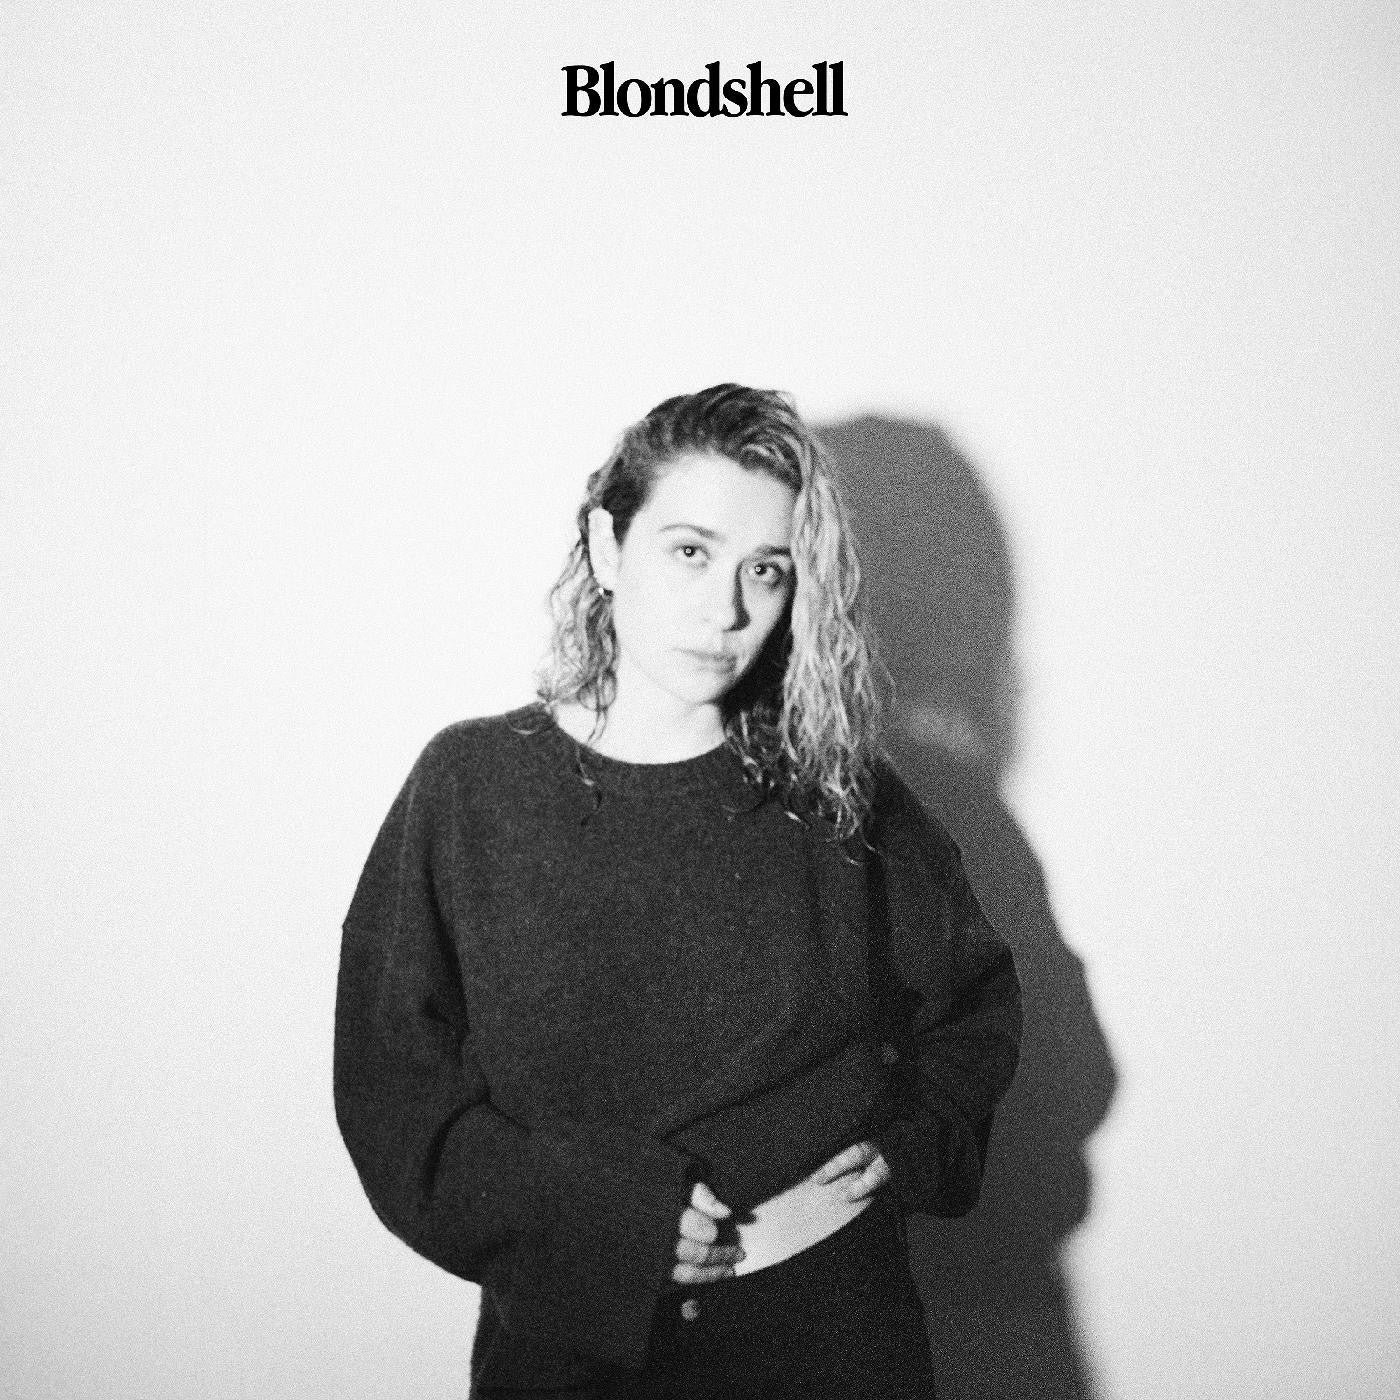 Blondshell - Blondshell [Clear Vinyl]